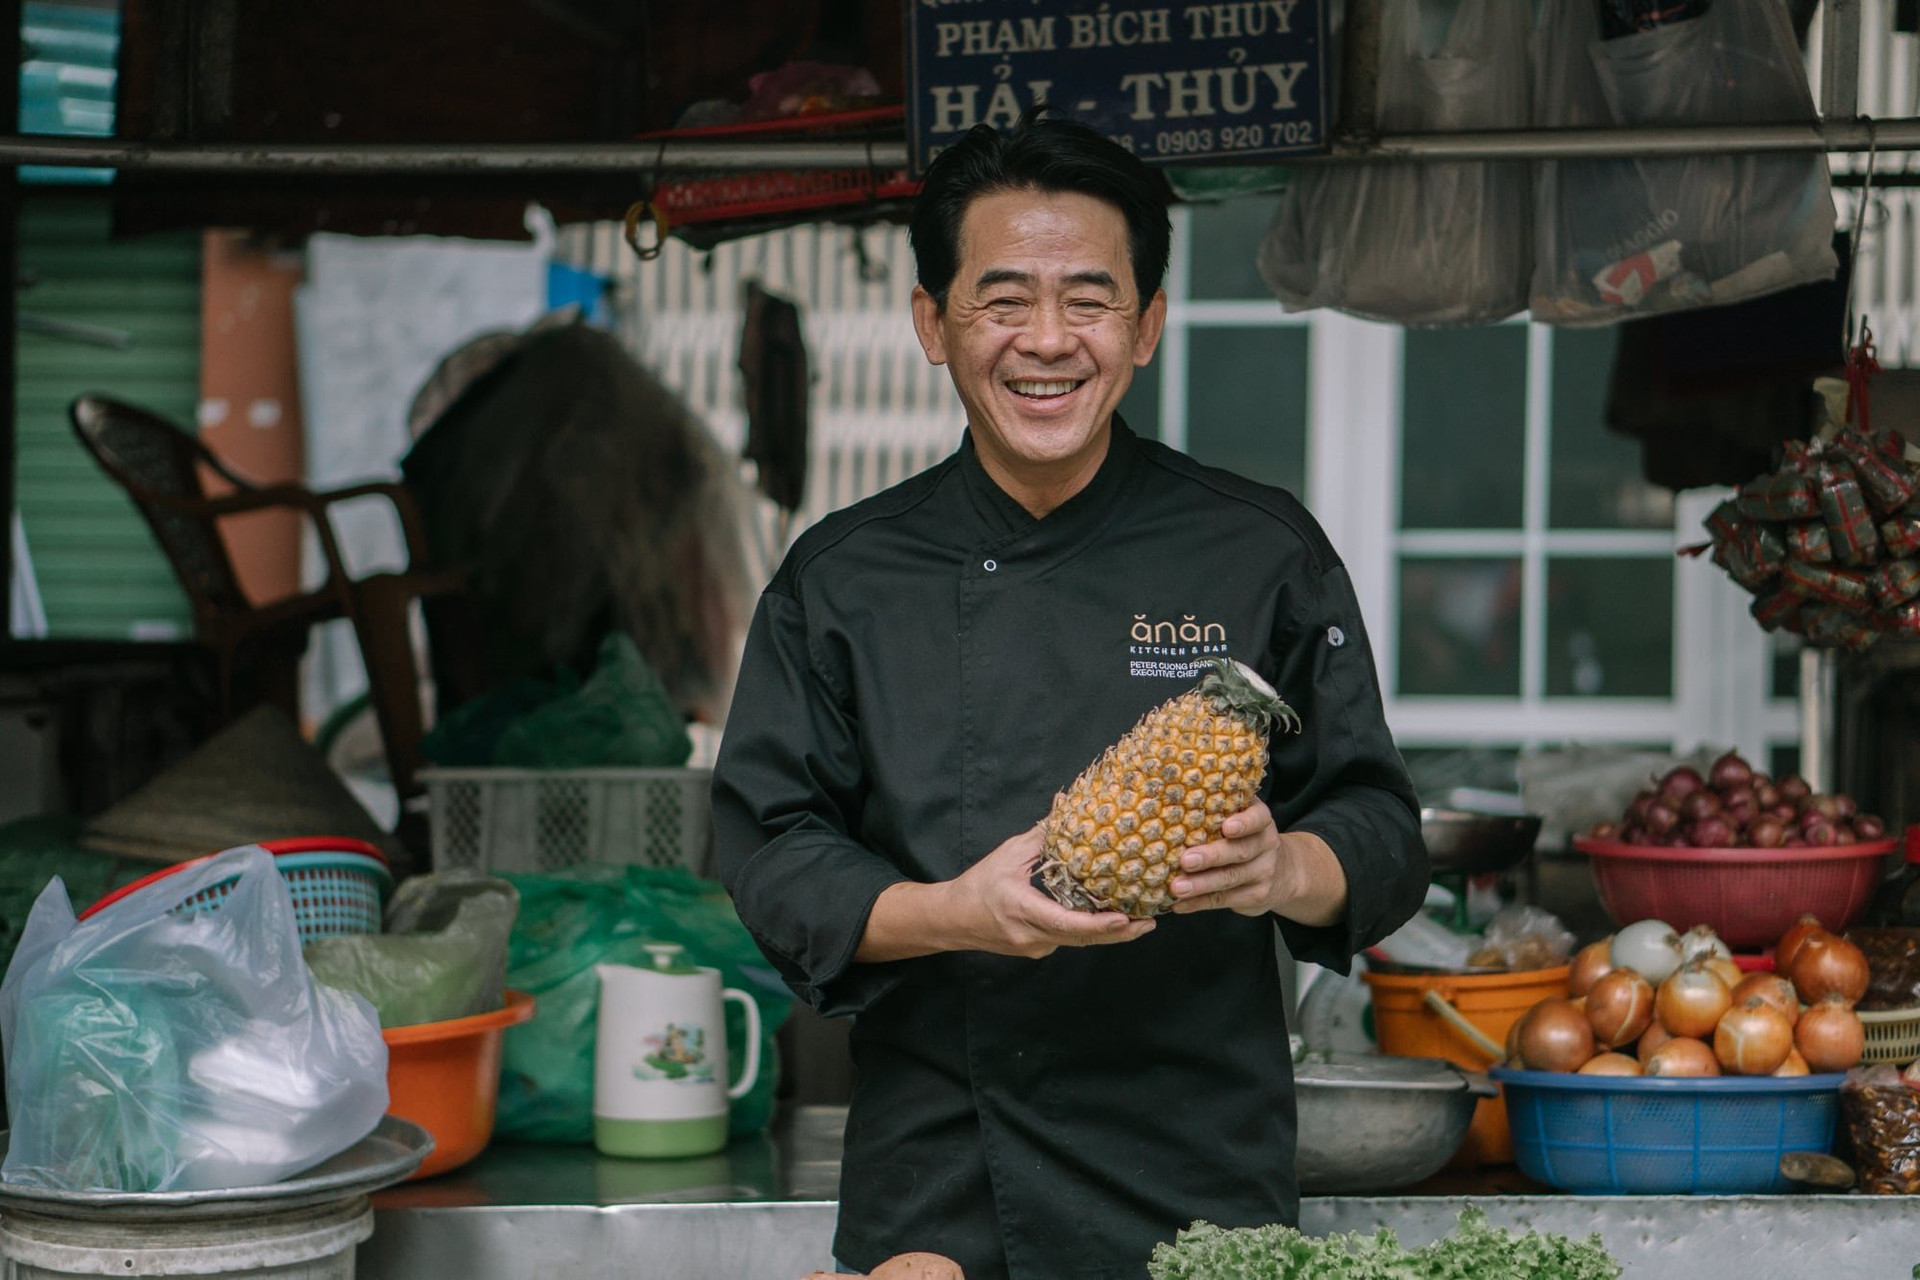 Nhà hàng vừa nhận sao Michelin - Ănăn Saigon: Nâng tầm món Việt với bánh mì, tô phở giá 2,3 triệu đồng, nằm trong khu chợ cũ - Ảnh 2.